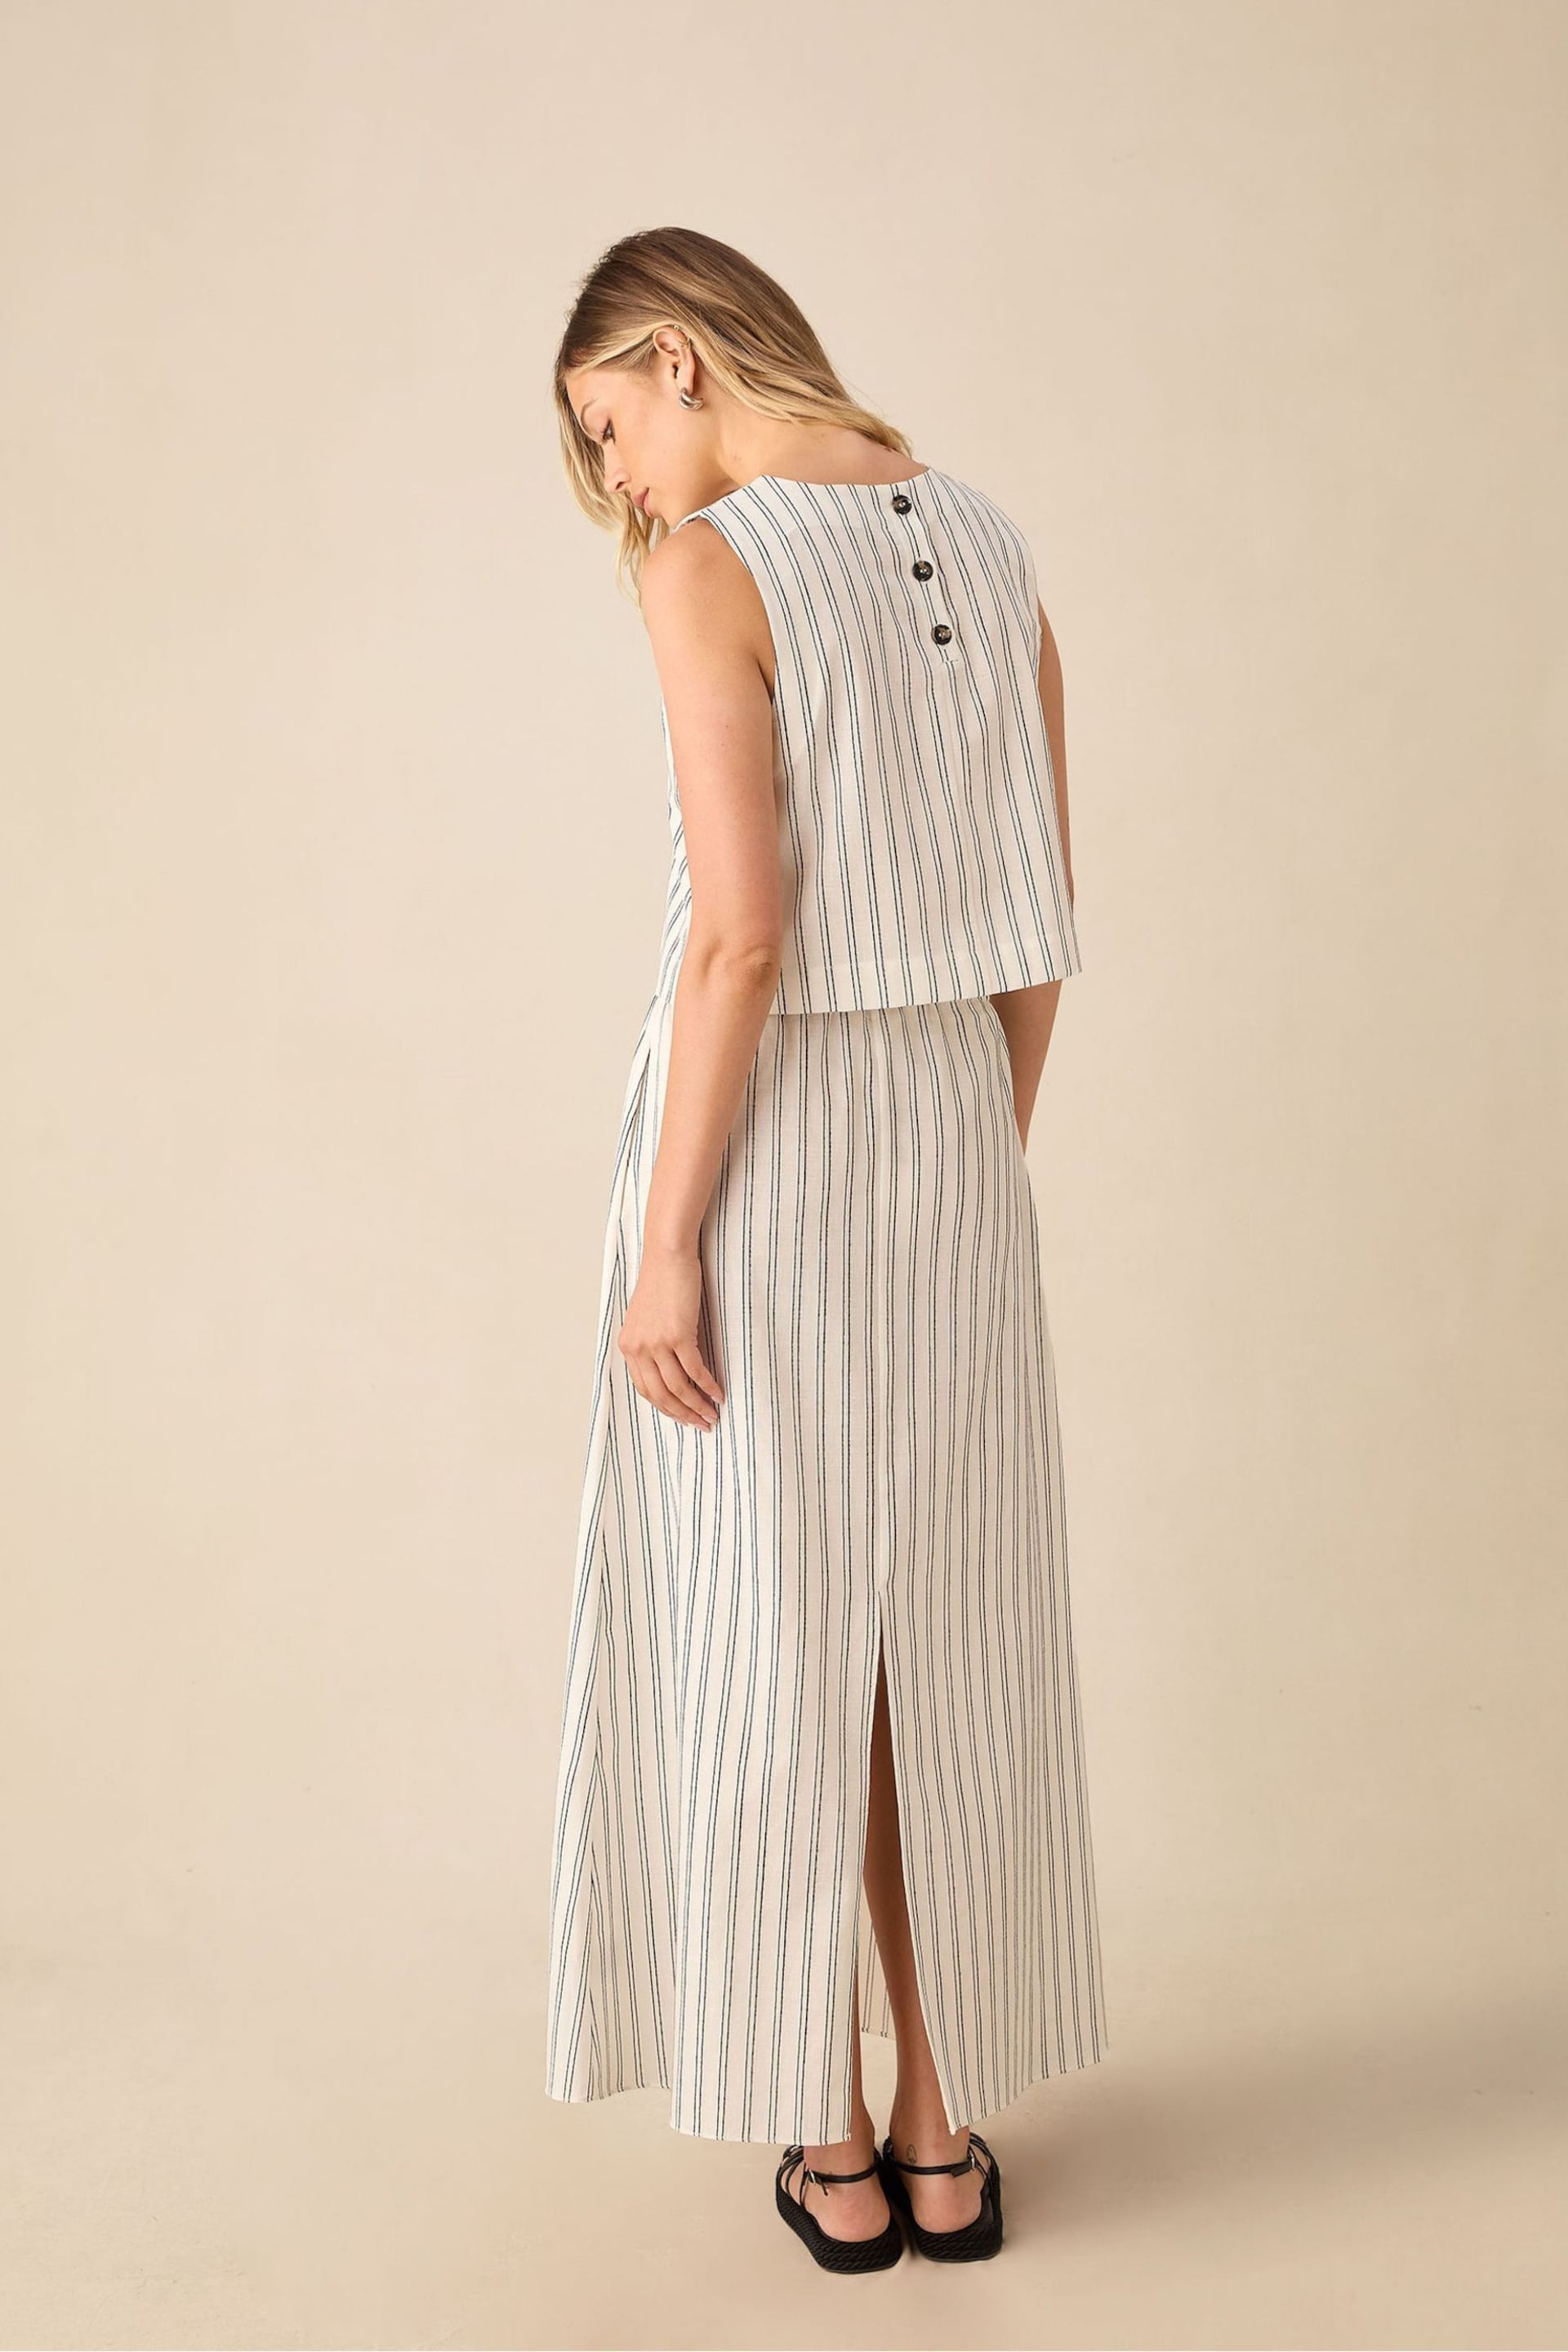 Ro&Zo Stripe Linen Ivory White Skirt - Image 3 of 5